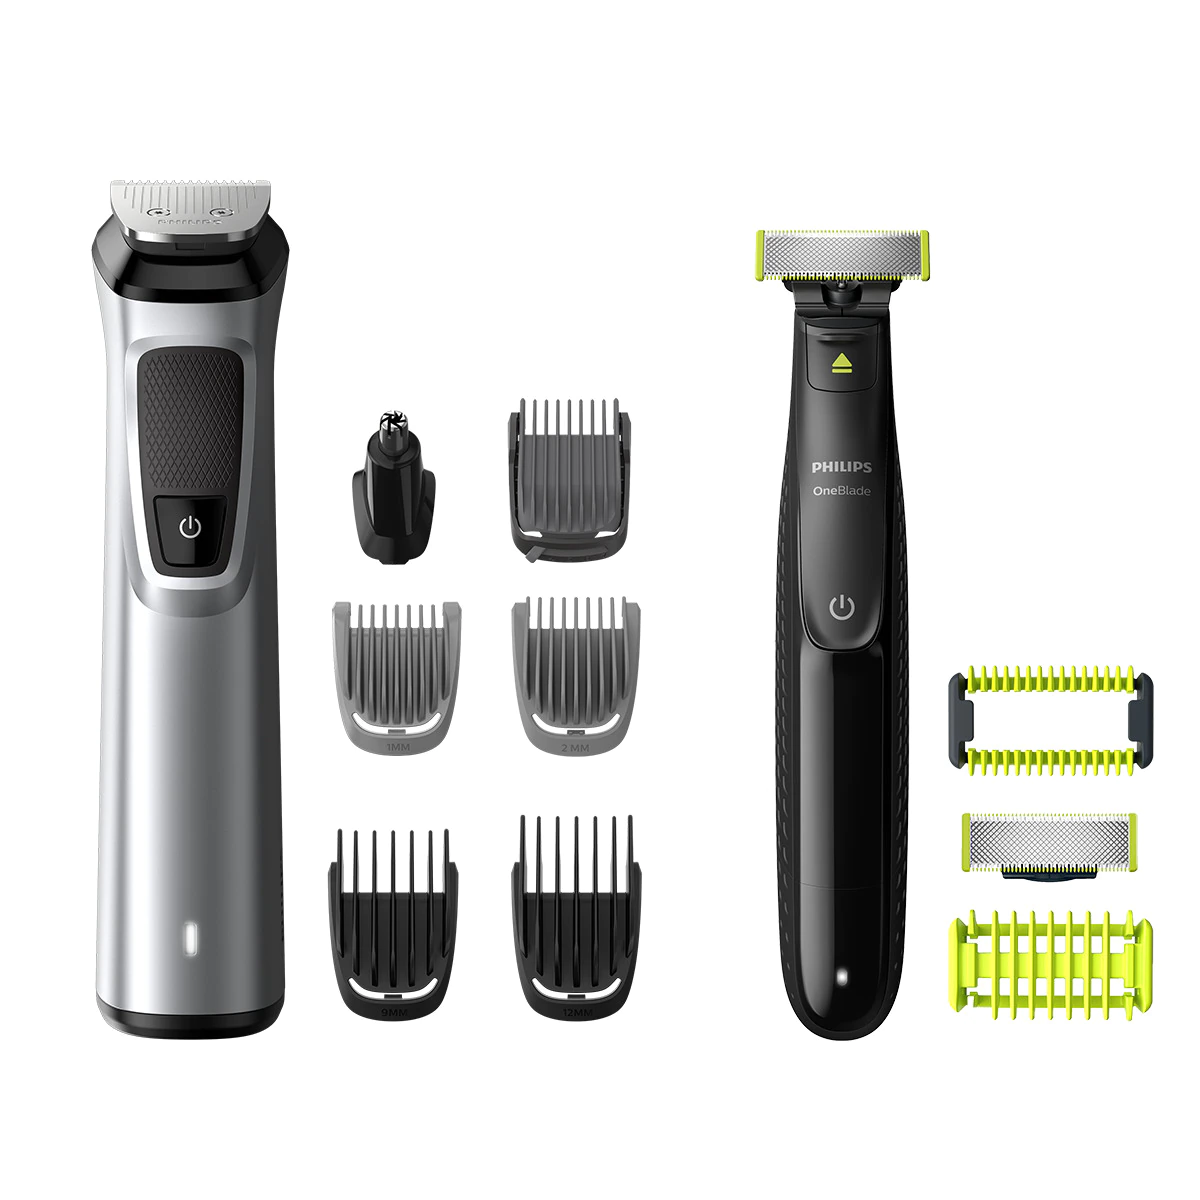 Recortadora de barba, cortapelos y cuerpo 12 en 1 Philips serie 9000 con maquinilla de afeitar OneBlade para cara y cuerpo